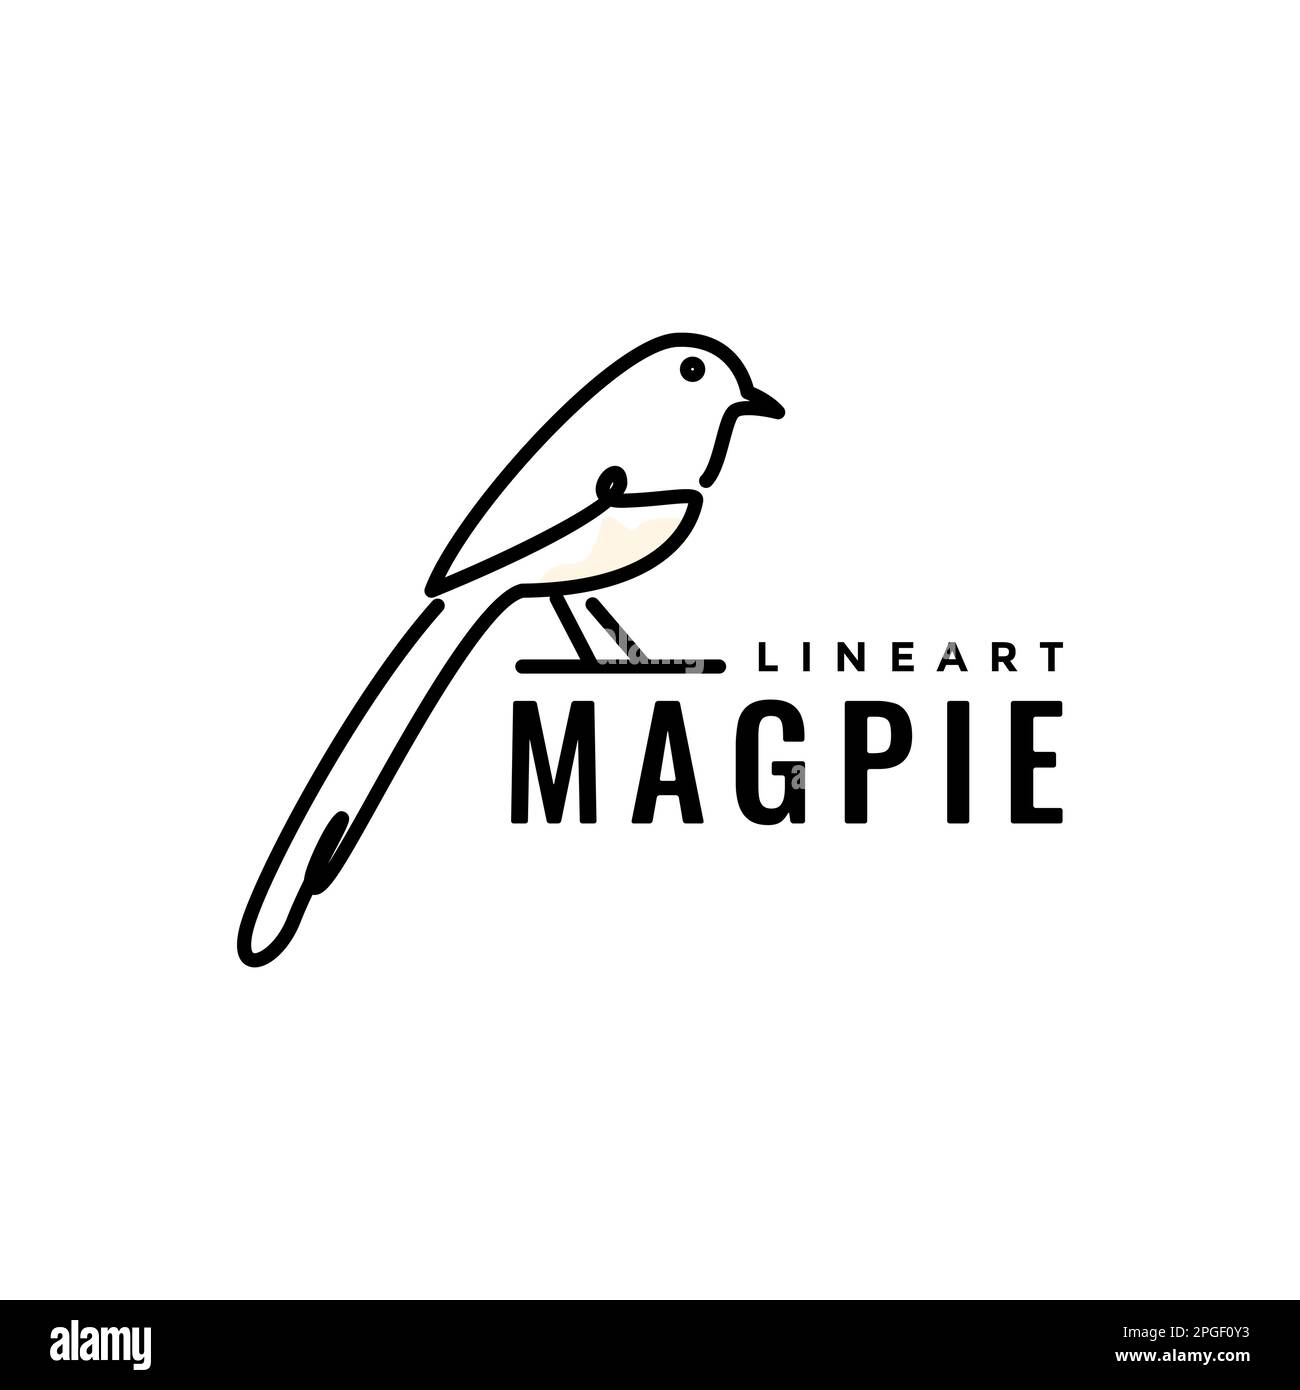 little bird singer magpie long tails beauty line art modern logo design ...